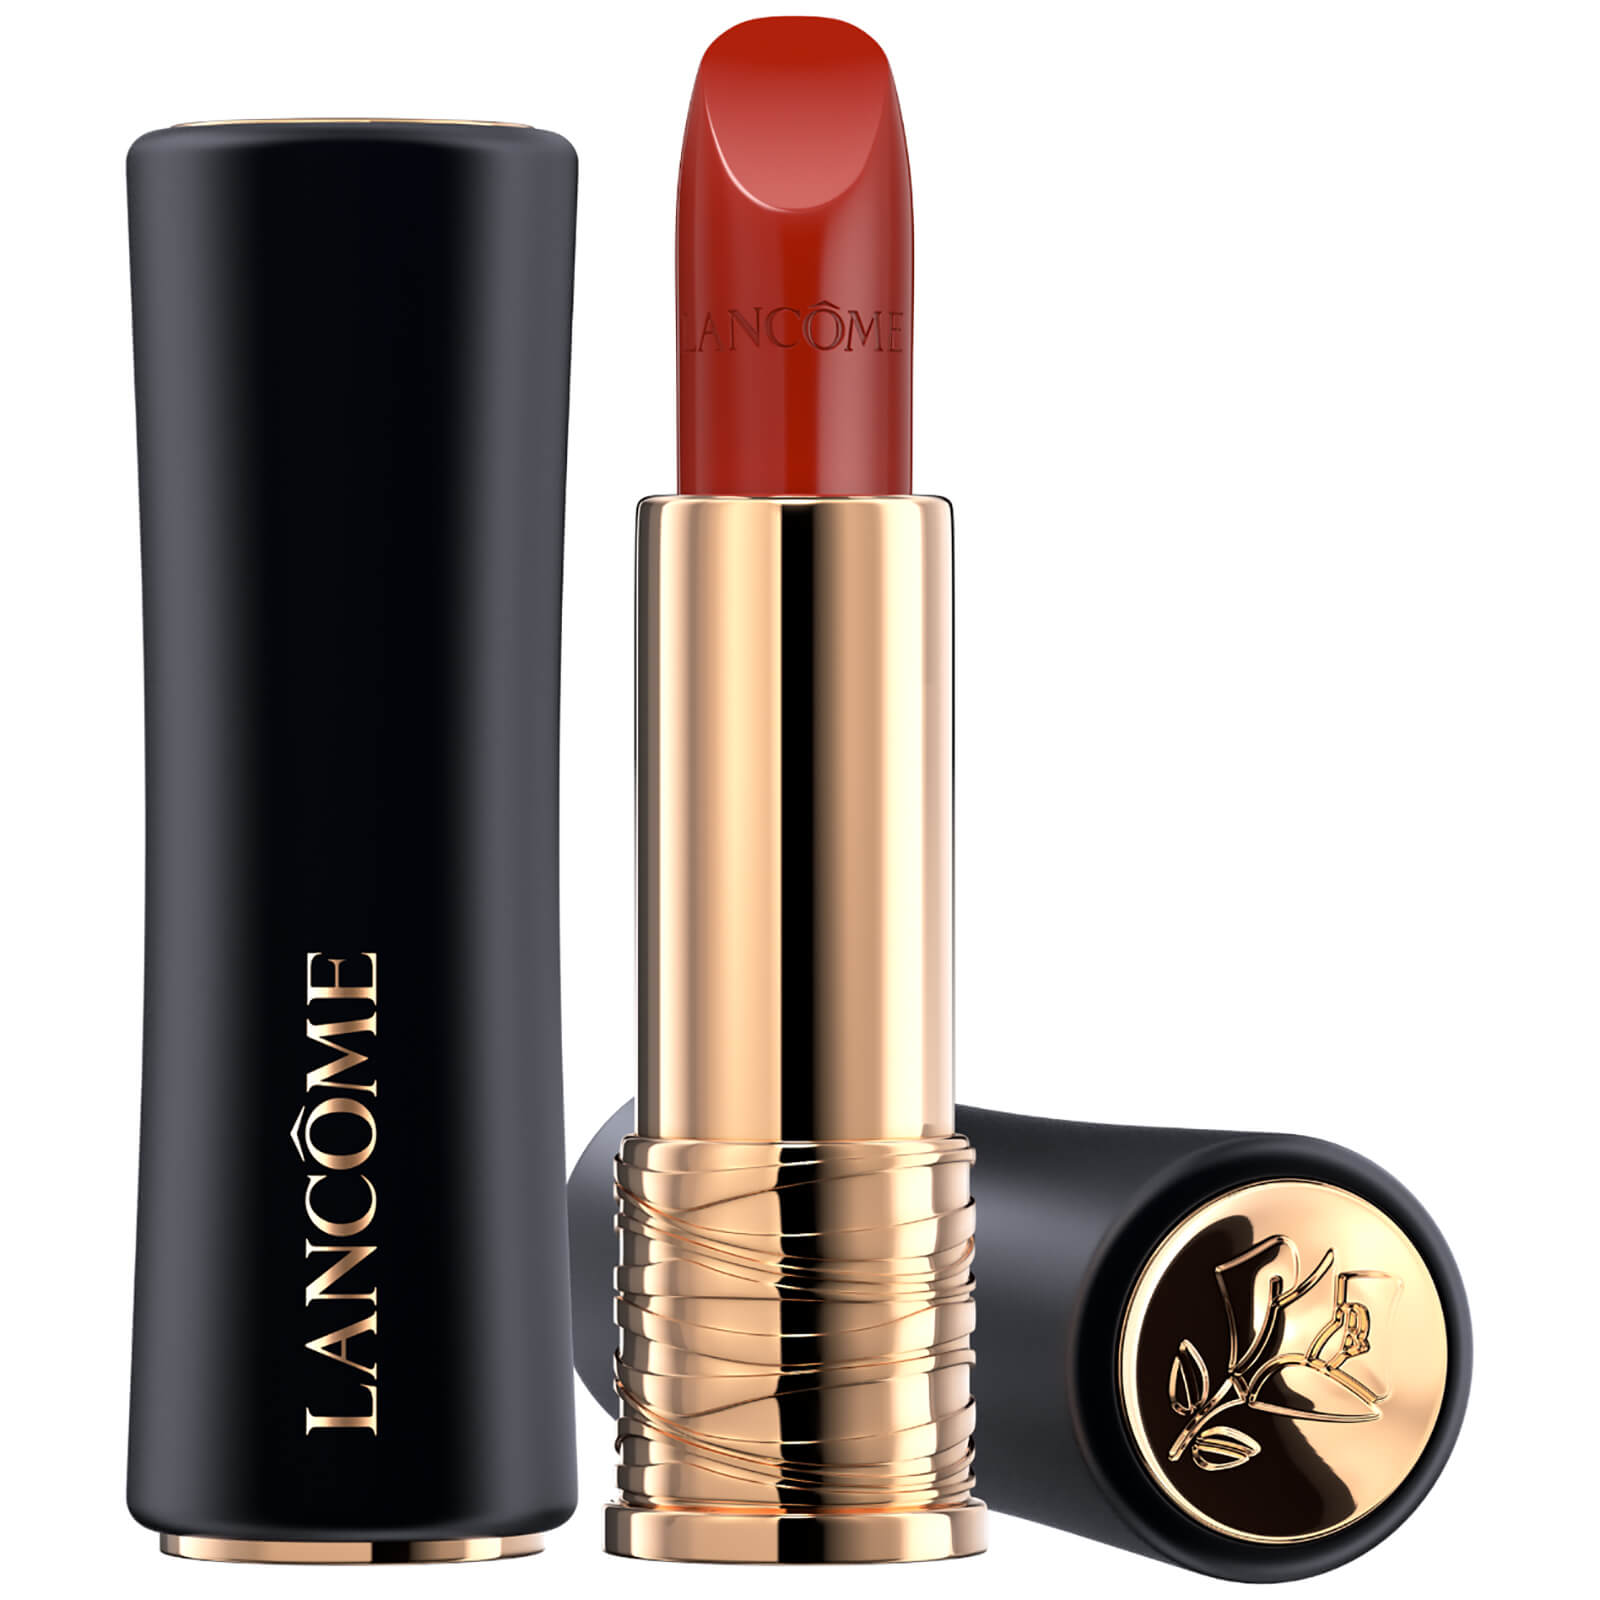 Lancôme L'Absolu Rouge Cream Lipstick 35ml (Verschiedene Farbtöne) - 196 French Touch von Lancome